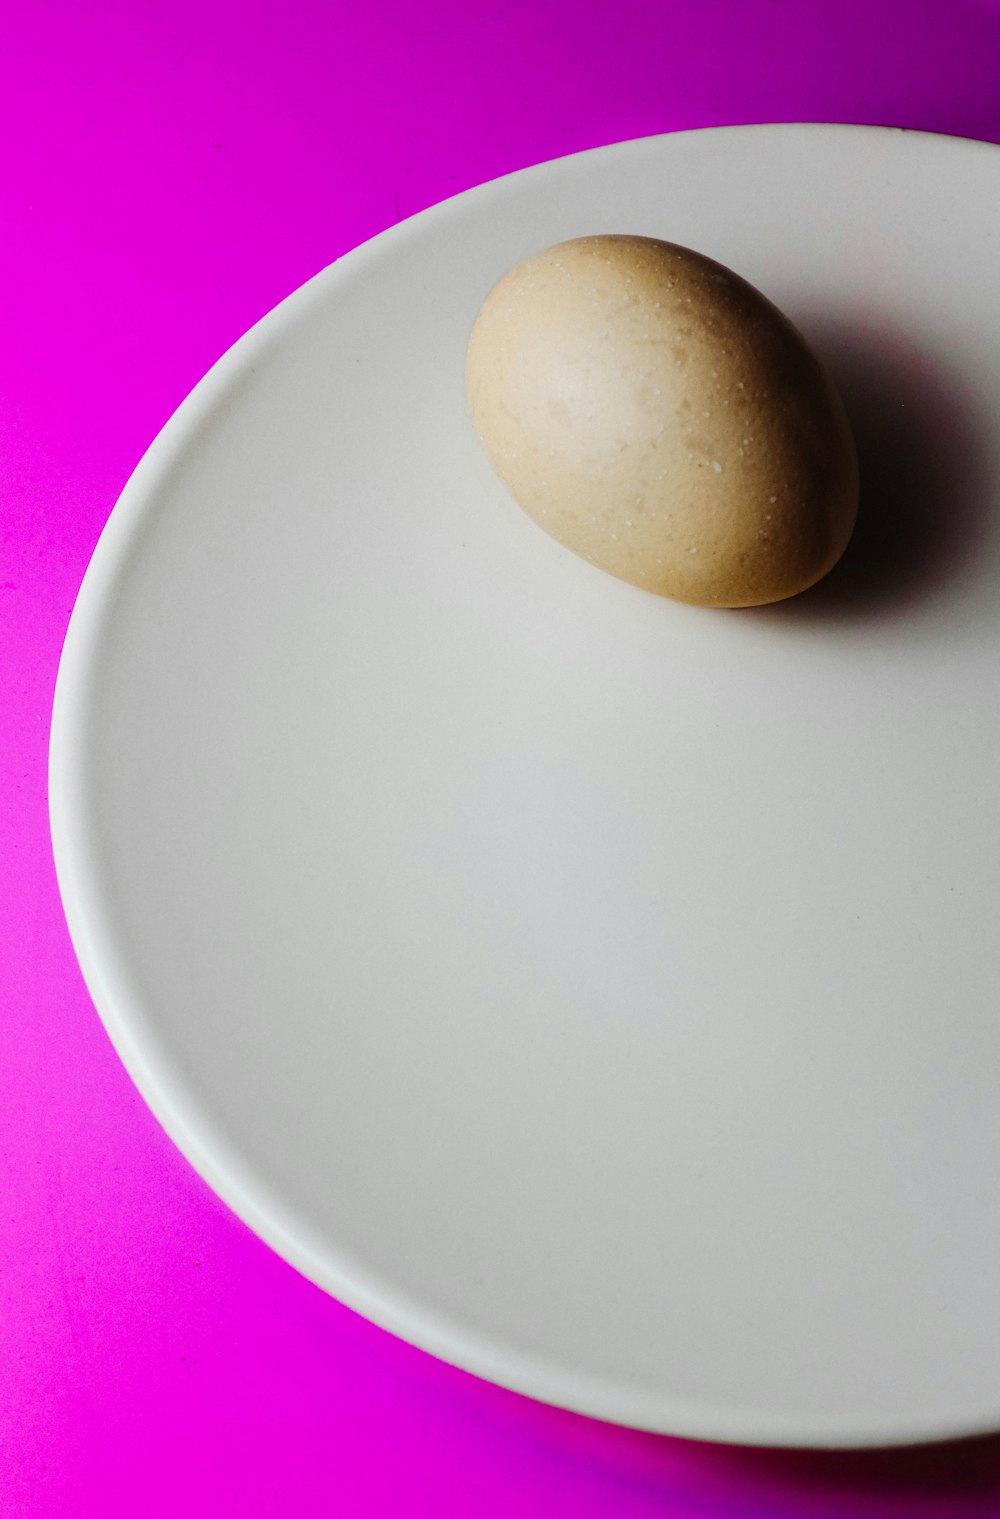 brown egg on white ceramic plate